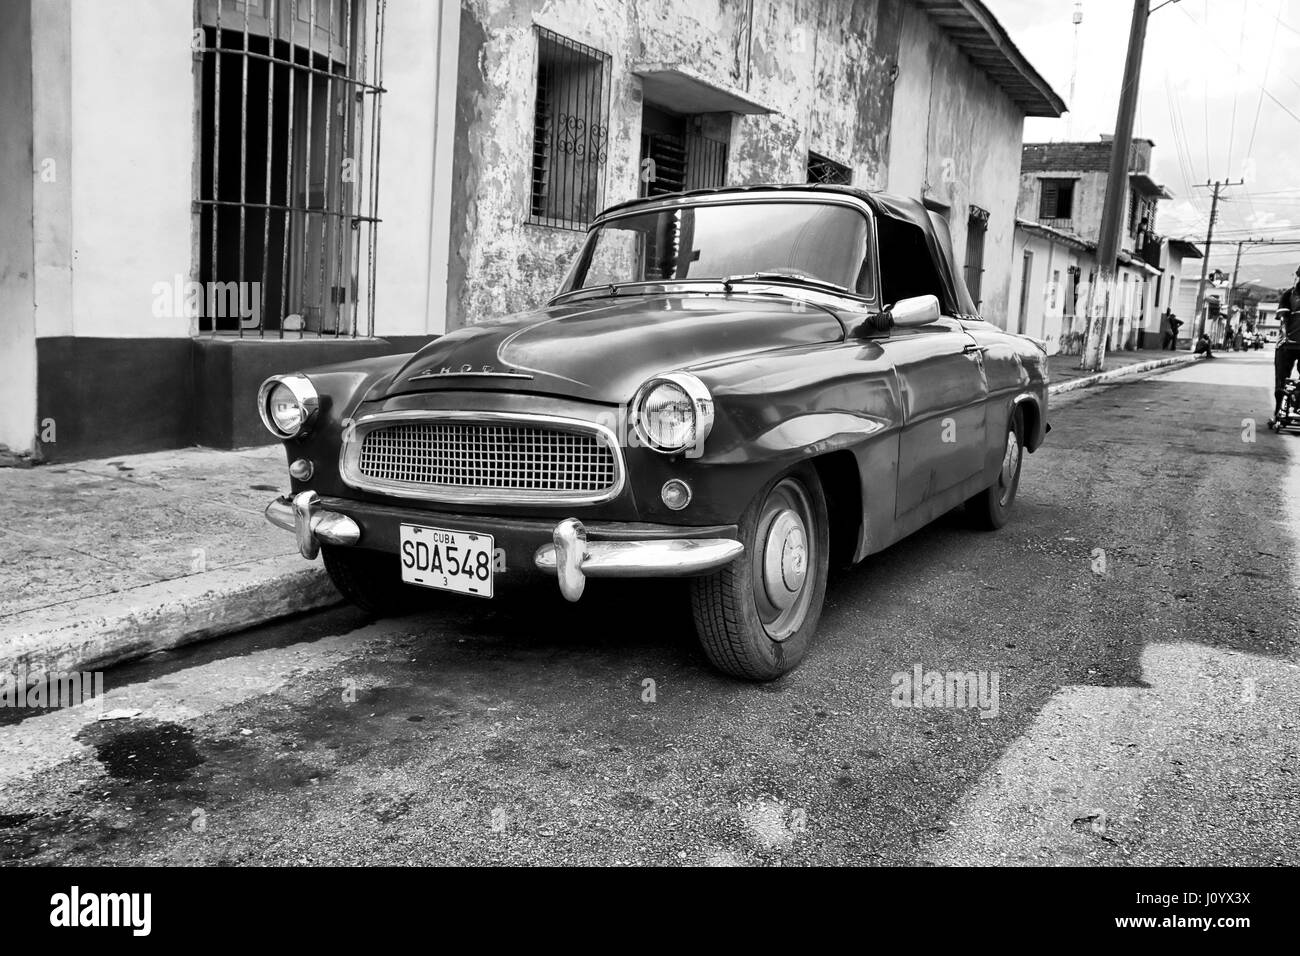 Skoda cabriolet in Trinidad, Cuba Stock Photo